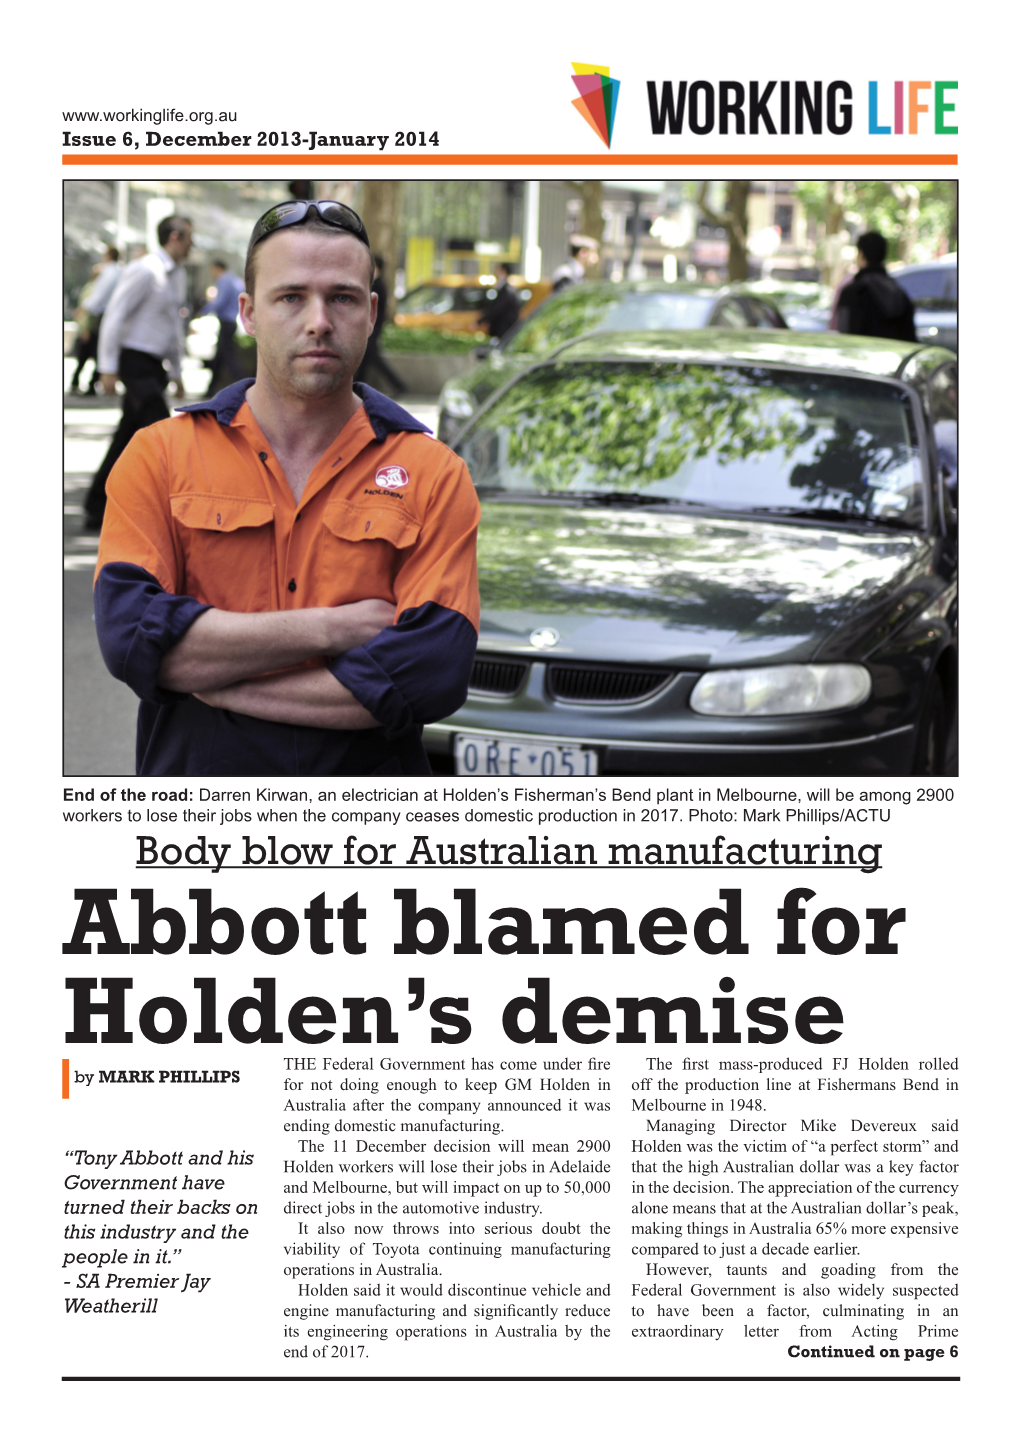 Abbott Blamed for Holden's Demise